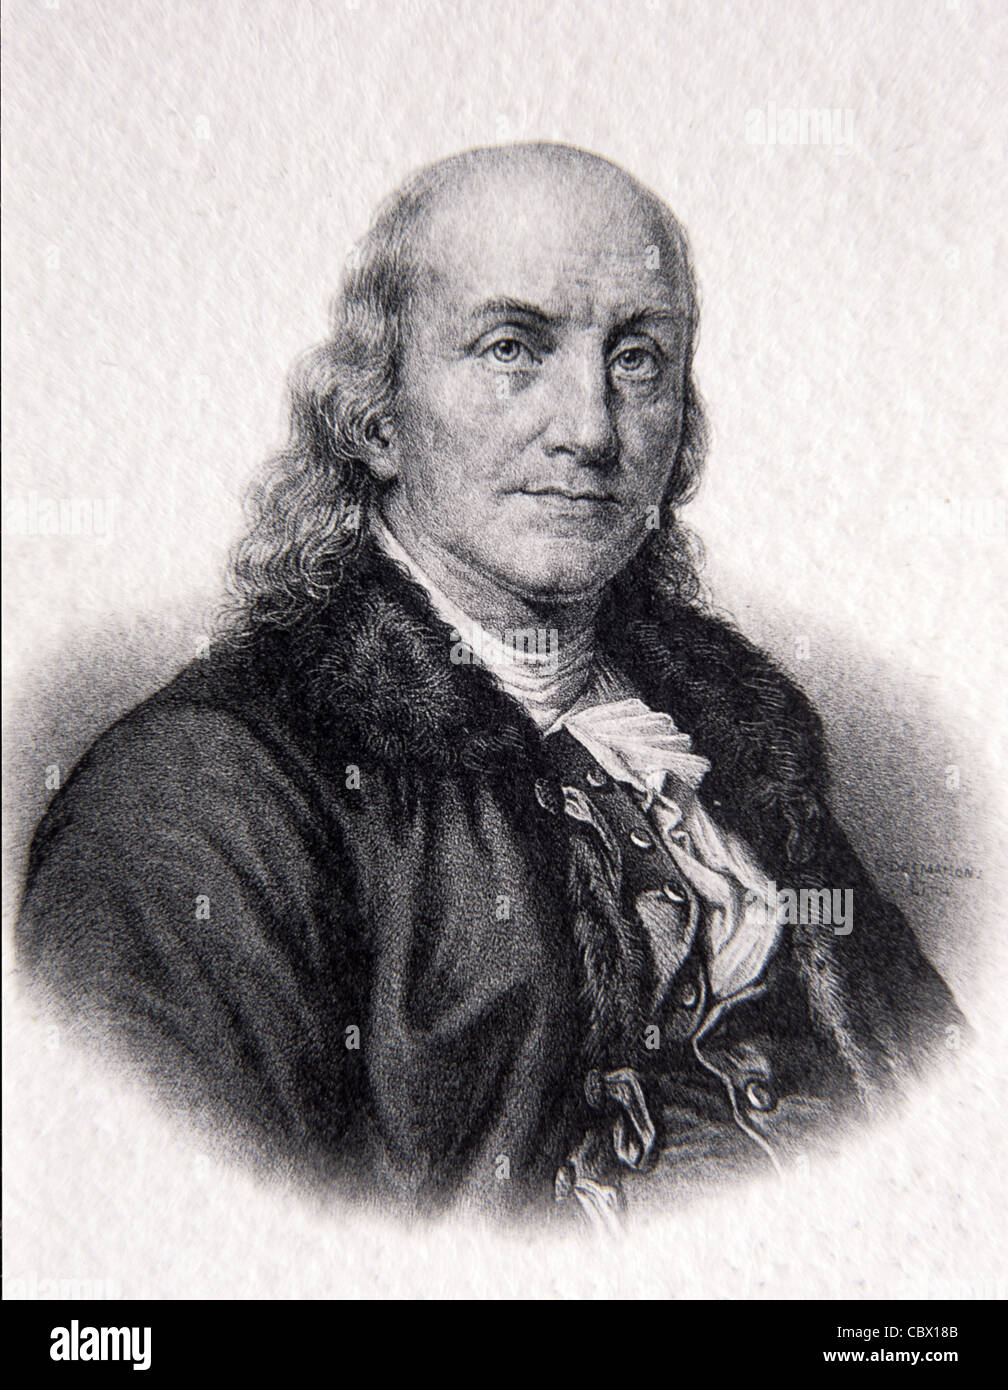 Ritratto di Benjamin Franklin (1706-1790), uno dei padri fondatori degli Stati Uniti. Stampante americana, autore & politico. Illustrazione o incisione vintage Foto Stock